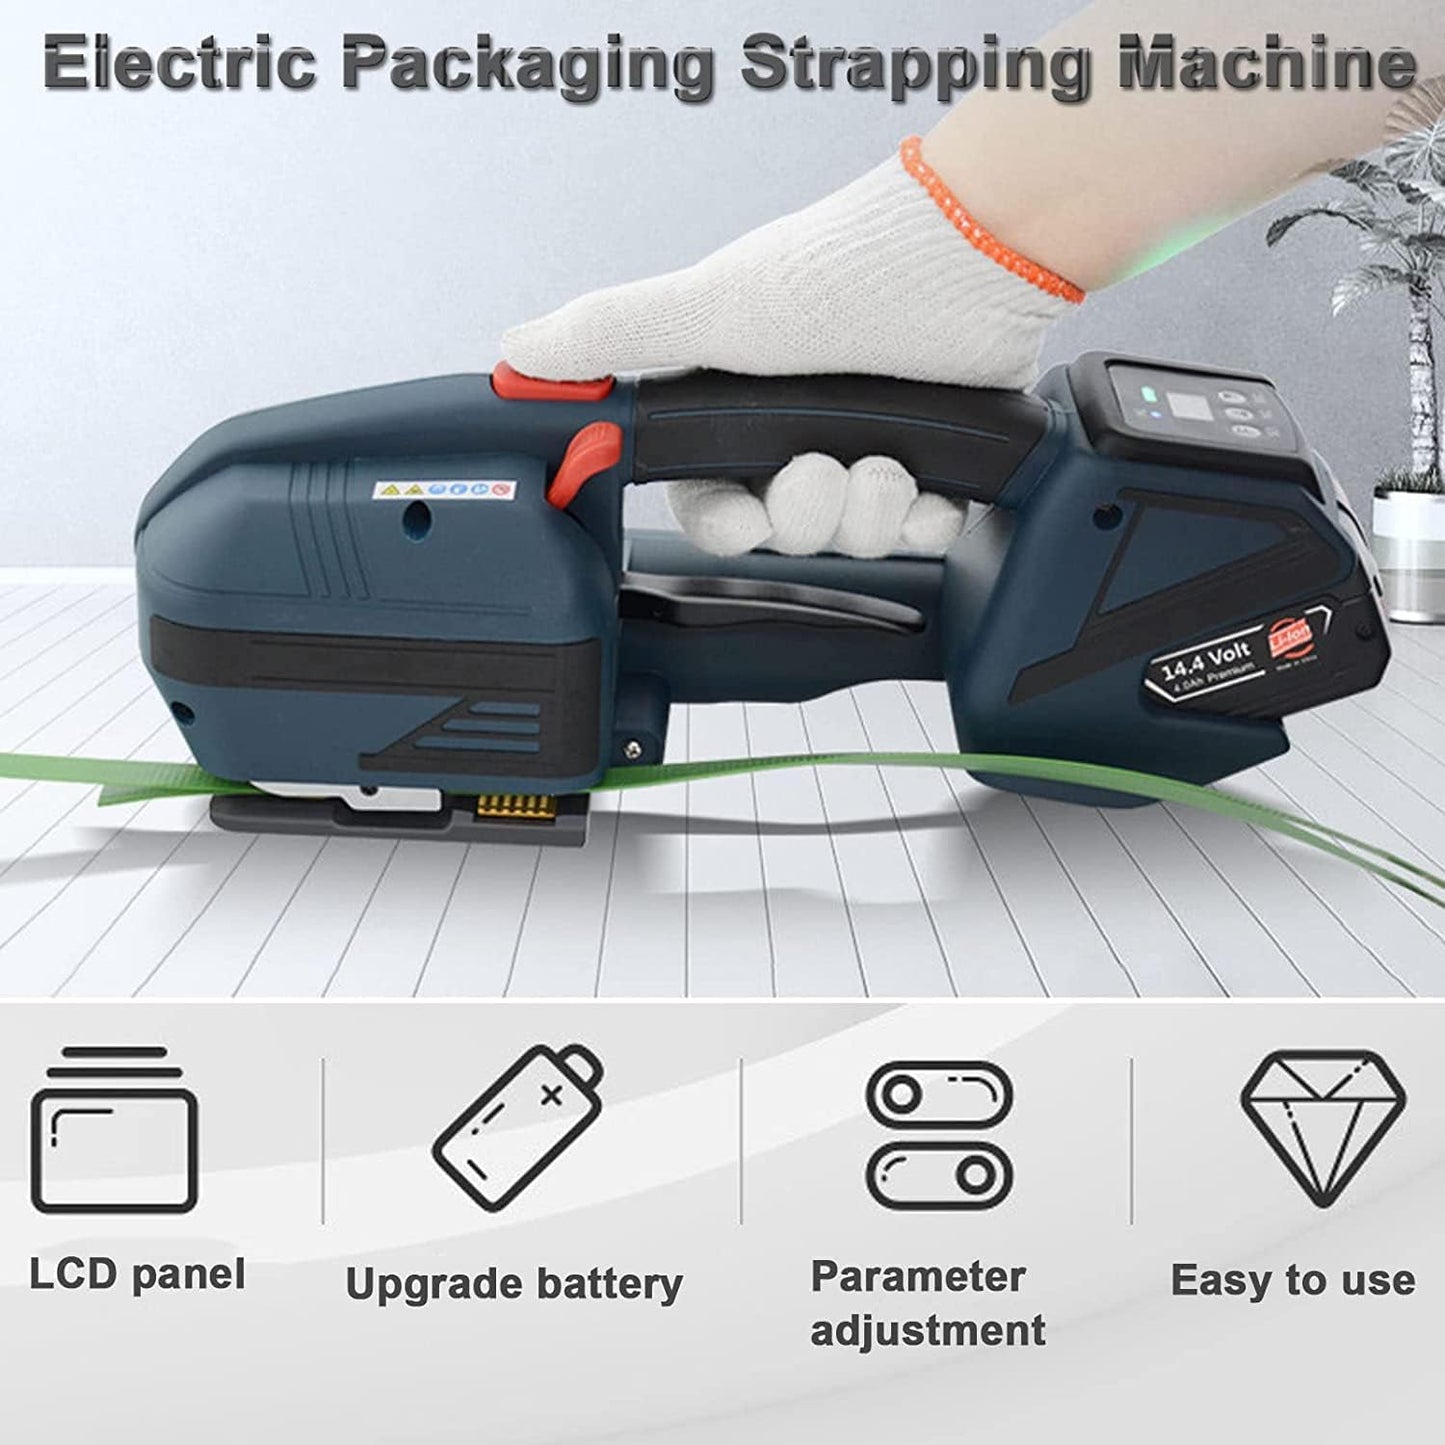 LIUSP Elektrische Umreifungsmaschine, tragbare Verpackungskarton-Palettenpresse, 4000-mAh-Akku für 1/2-5/8-Zoll-Bänder, automatisches Umreifungswerkzeug